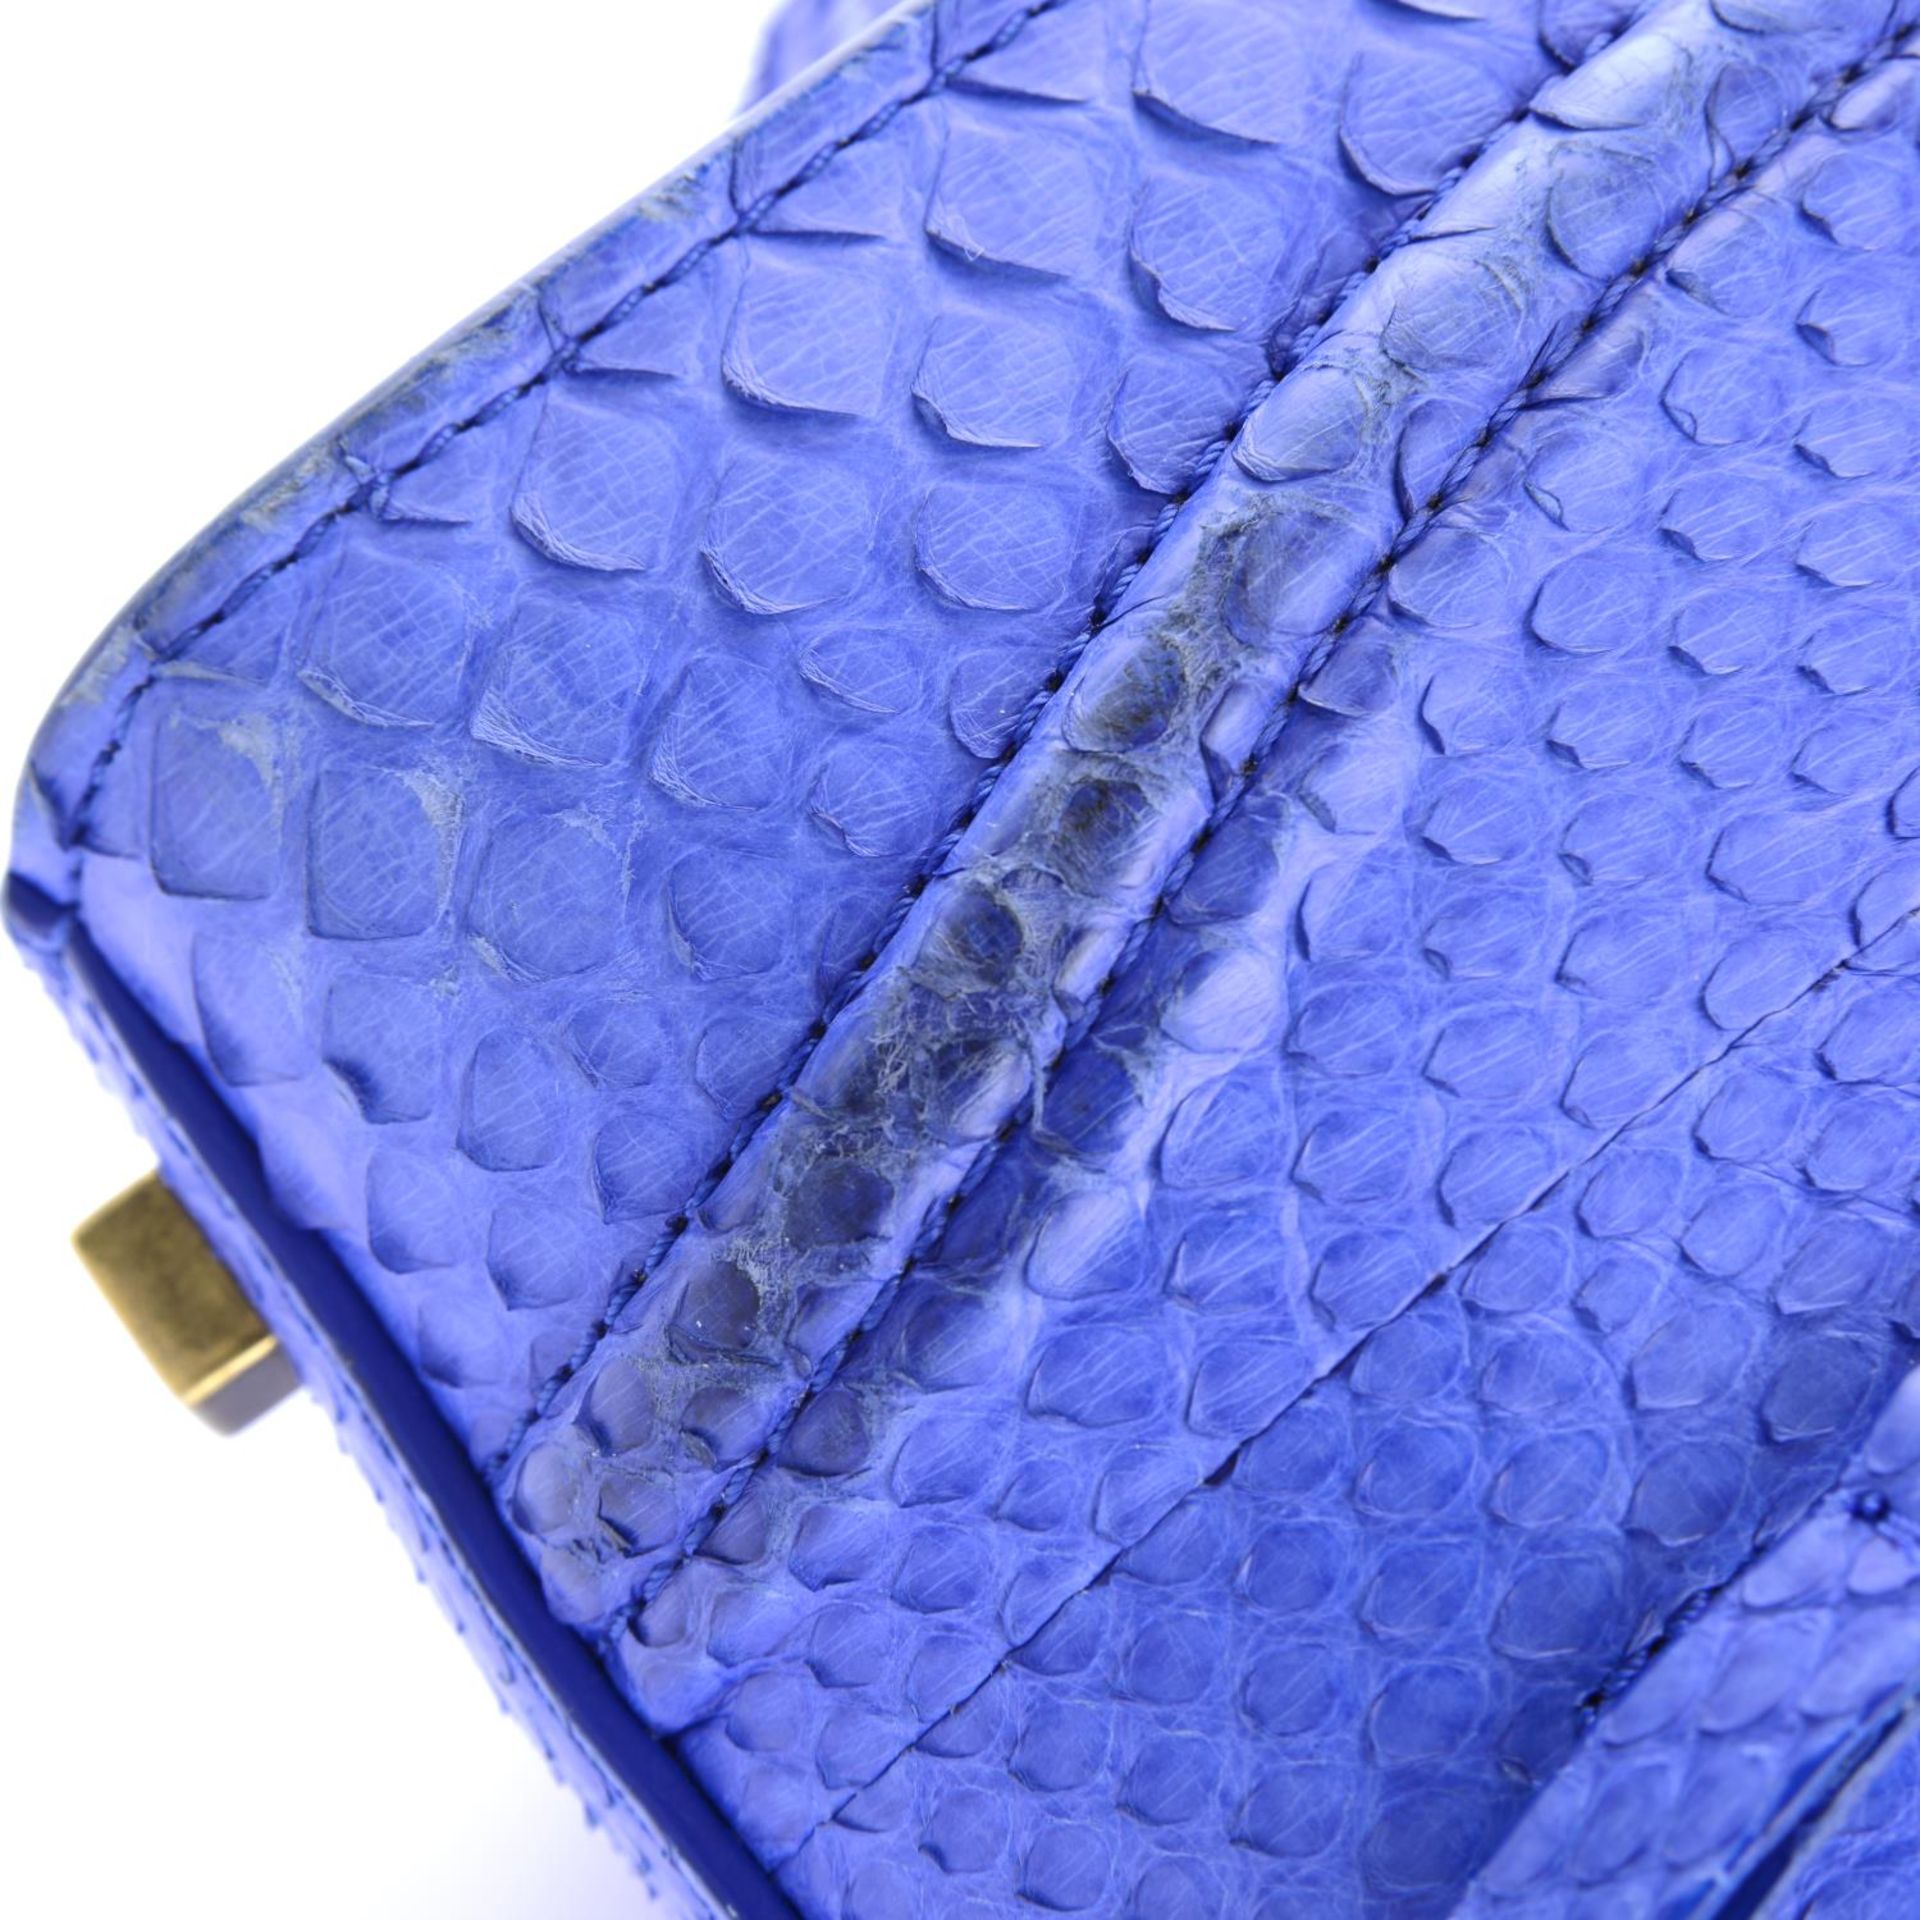 CÉLINE - a blue python skin Phantom handbag. - Image 9 of 9